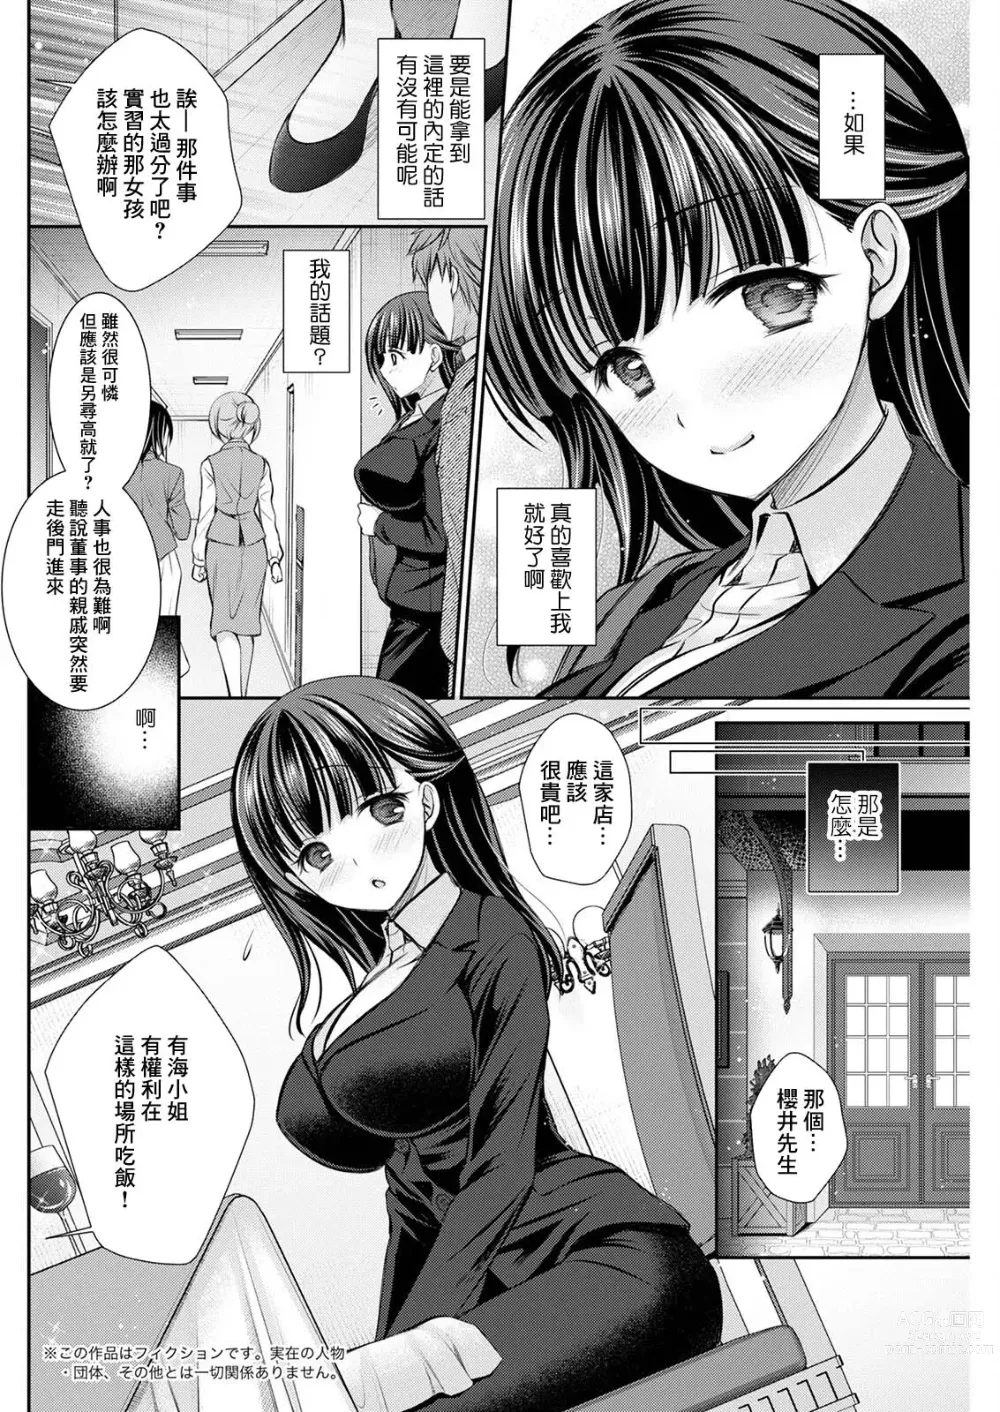 Page 2 of manga Wazawai Tenjite